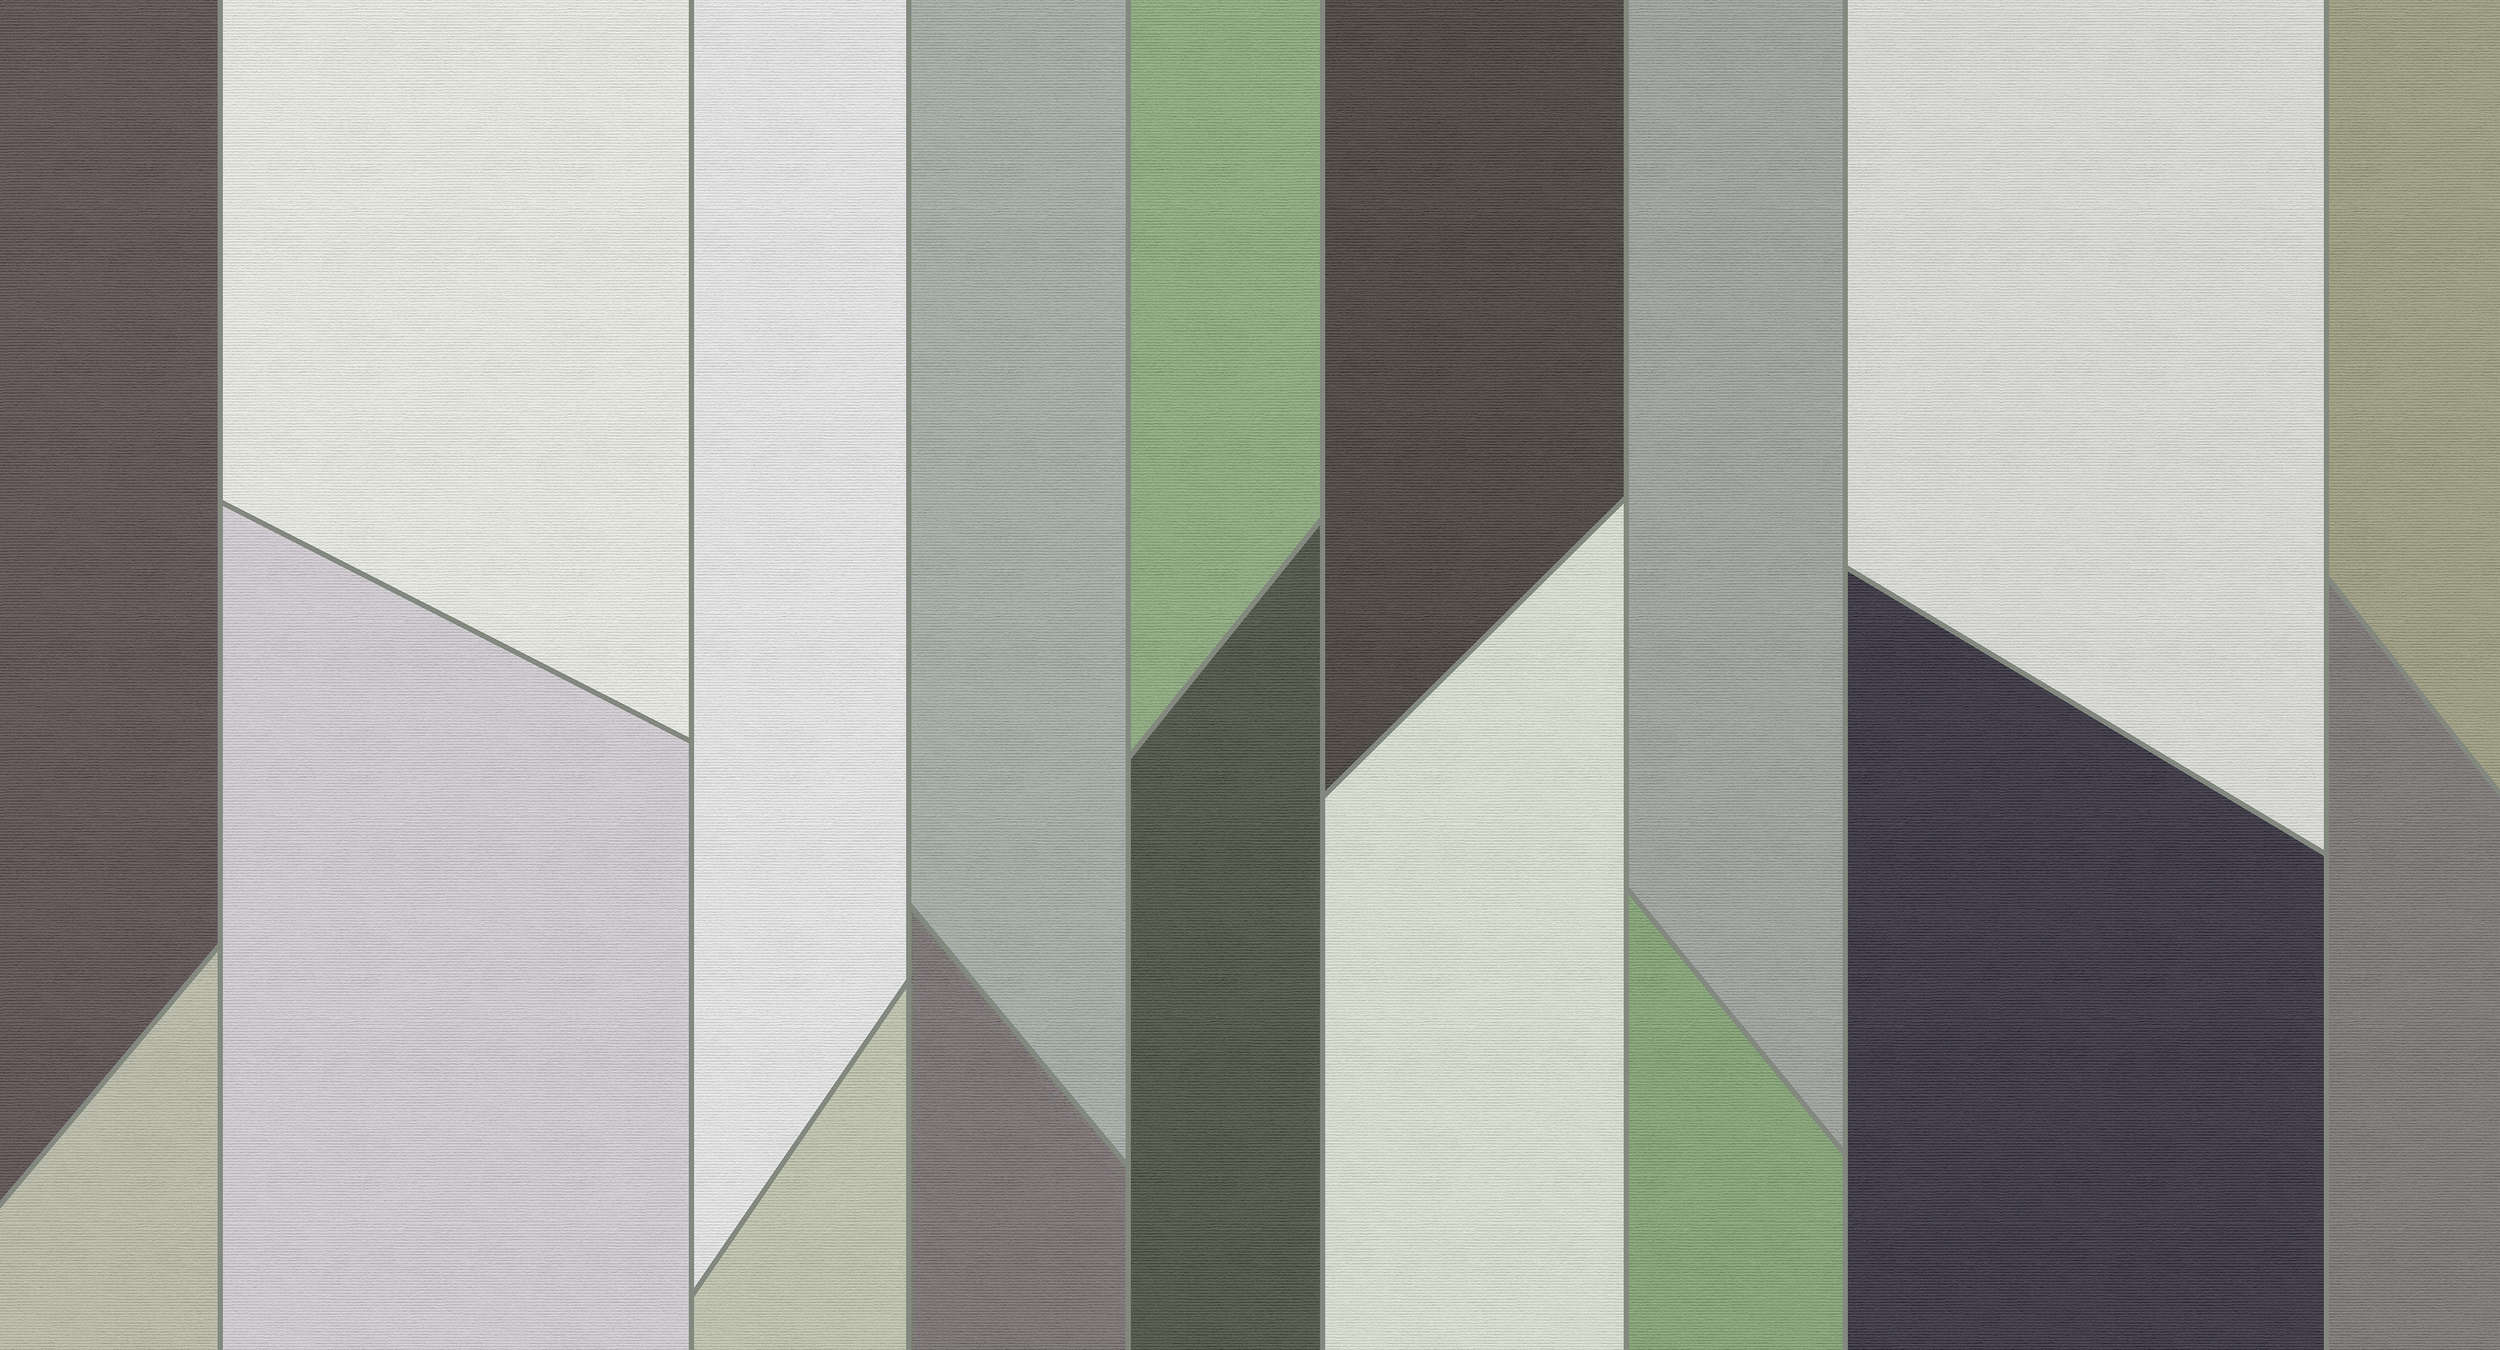             Geometry 3 - Carta da parati a righe con struttura a coste e disegno retrò colorato - Verde, Viola | Pile liscio opaco
        